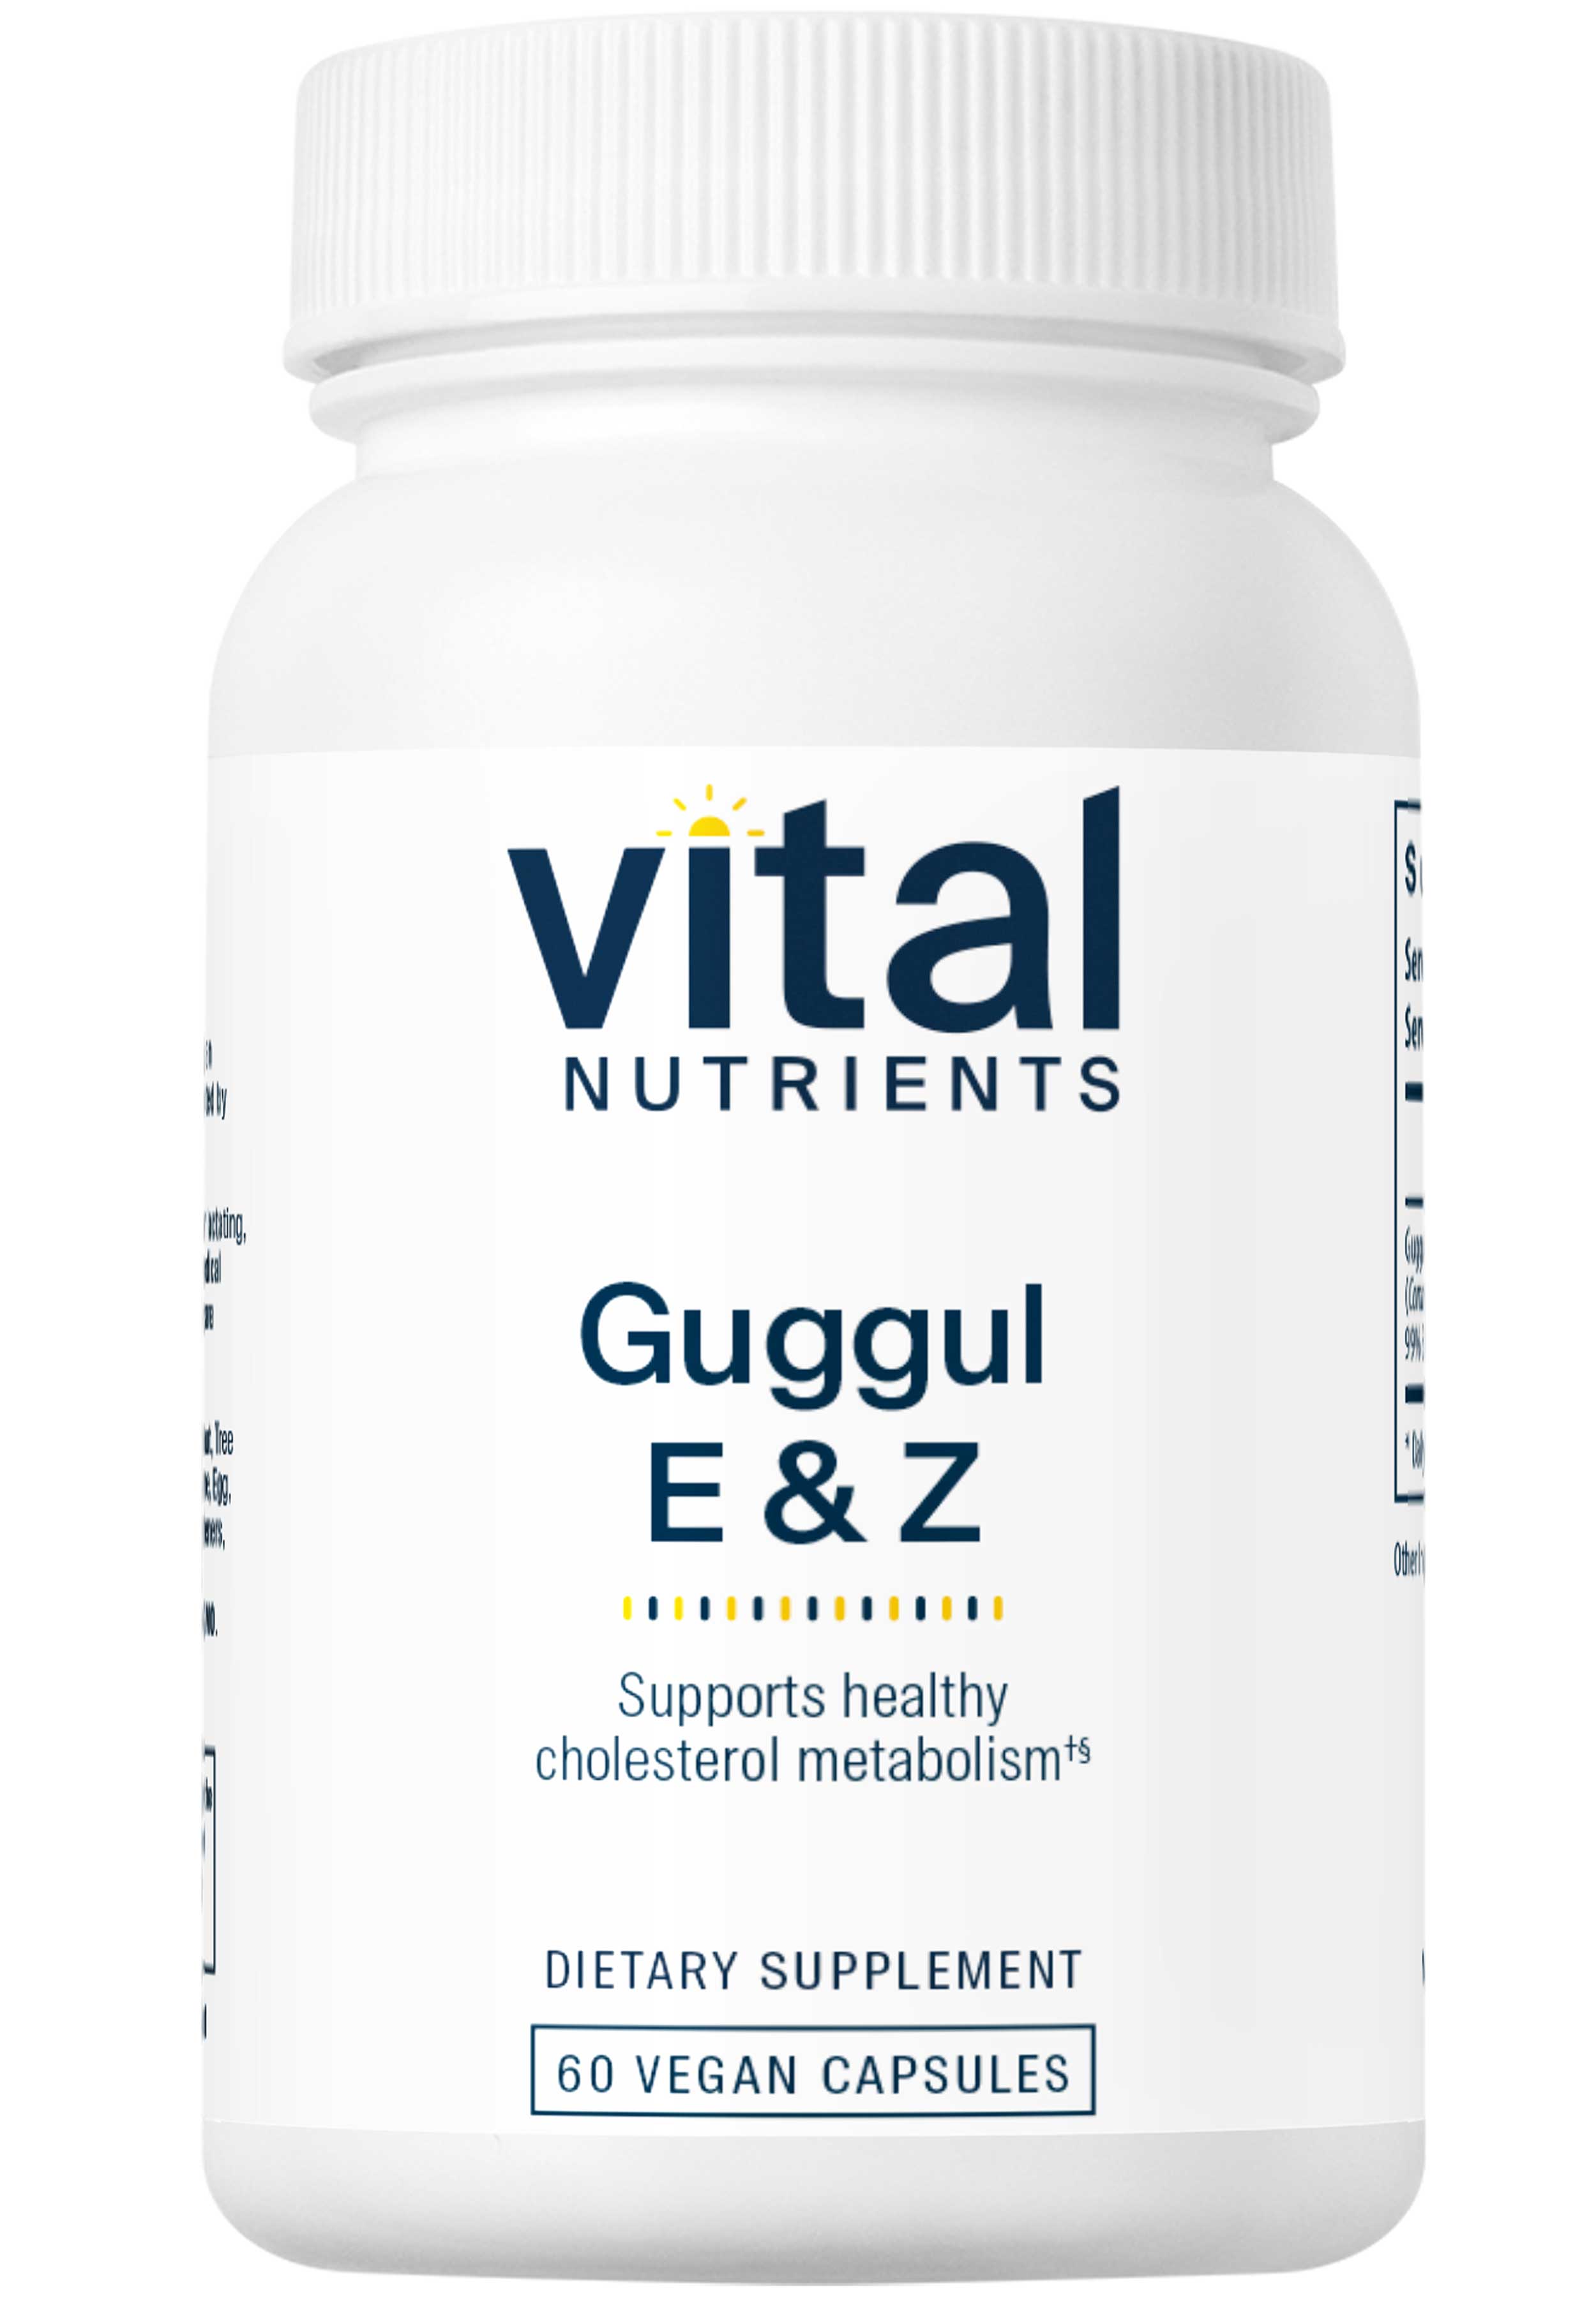 Vital Nutrients Guggul E & Z 99%